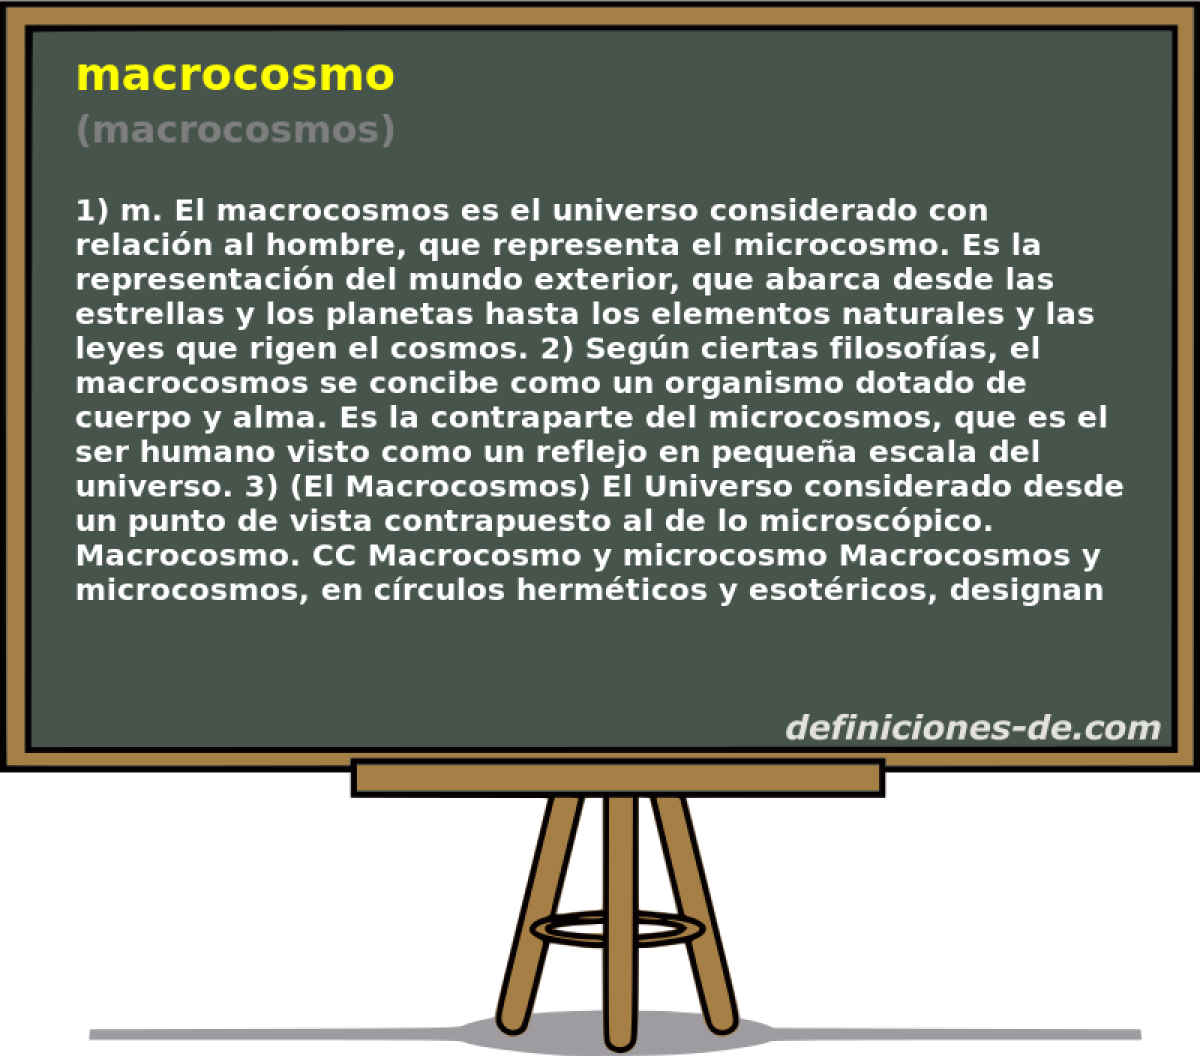 macrocosmo (macrocosmos)